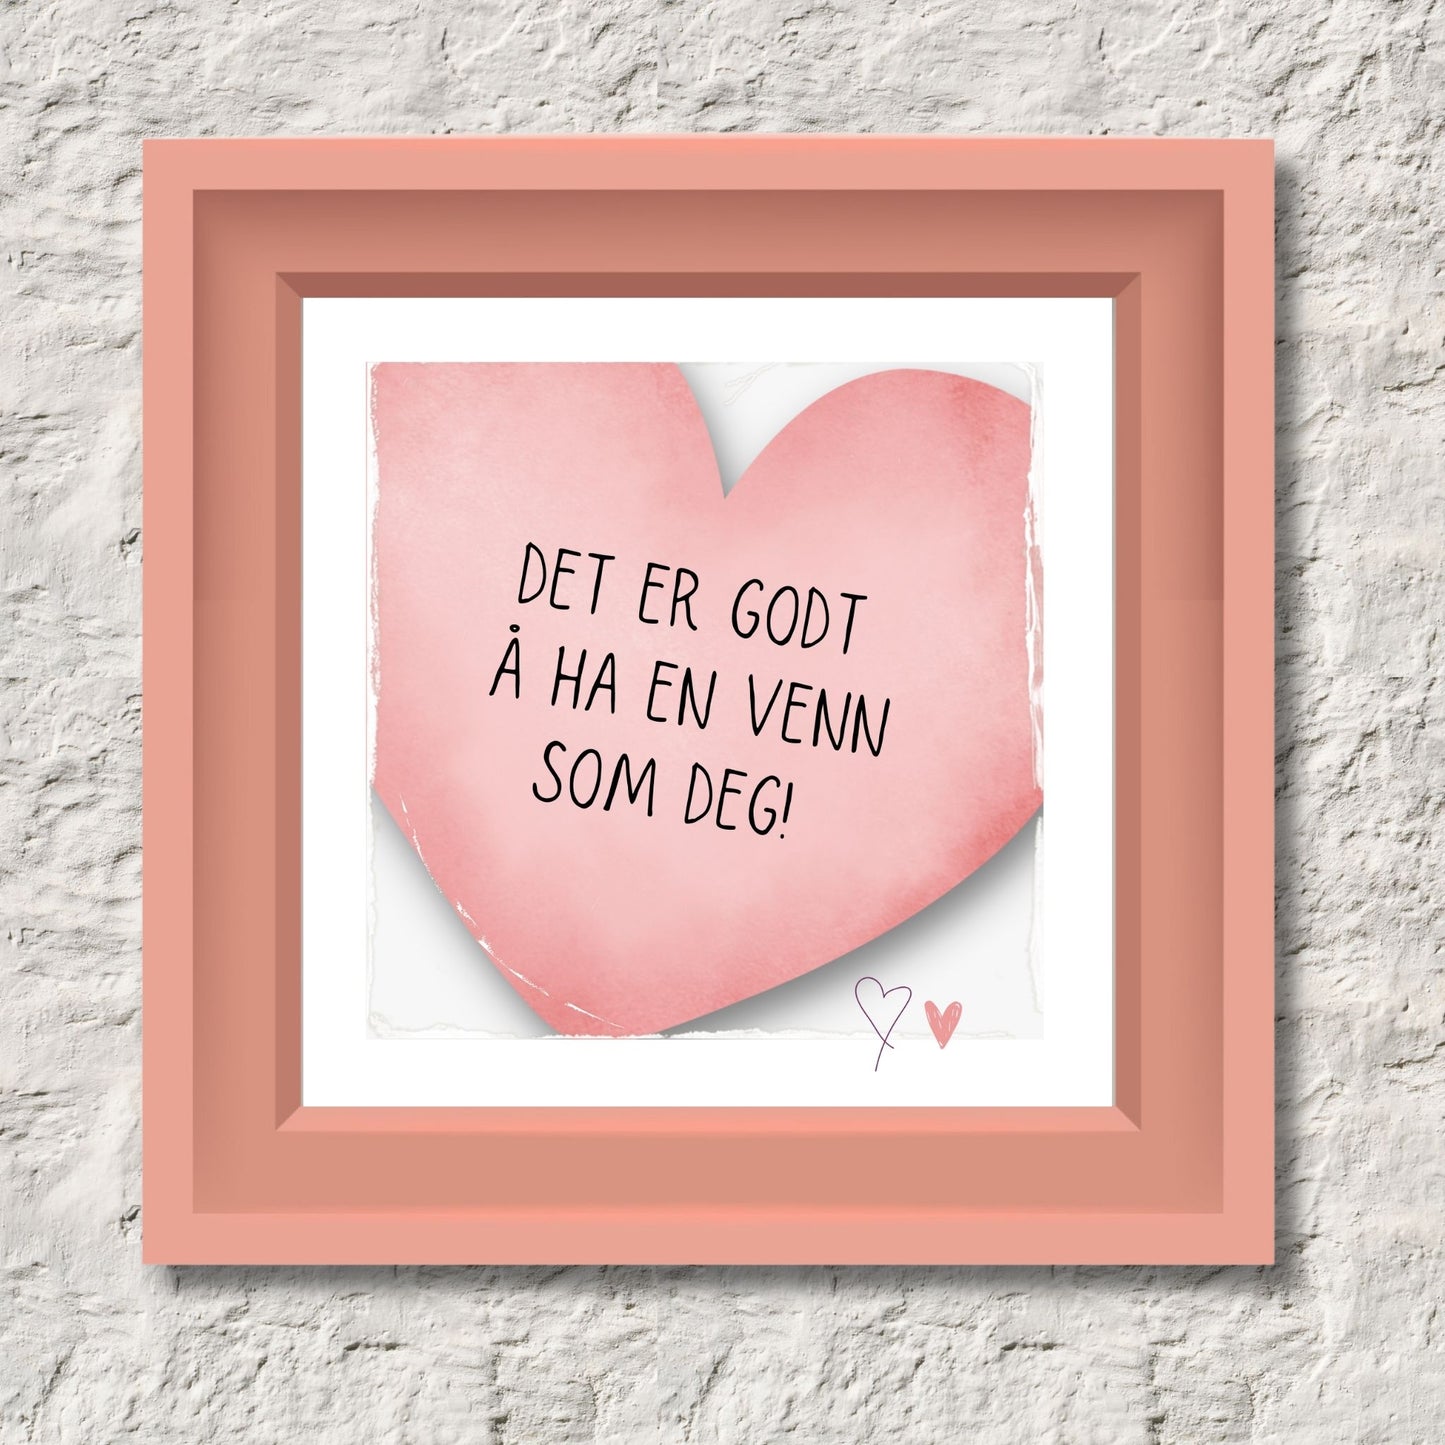 Plakat med rosa hjerte og tekst "Det er godt å ha en venn som deg". Med hvit kant på 1,5 cm. Illustrasjon viser plakat i rosa ramme.